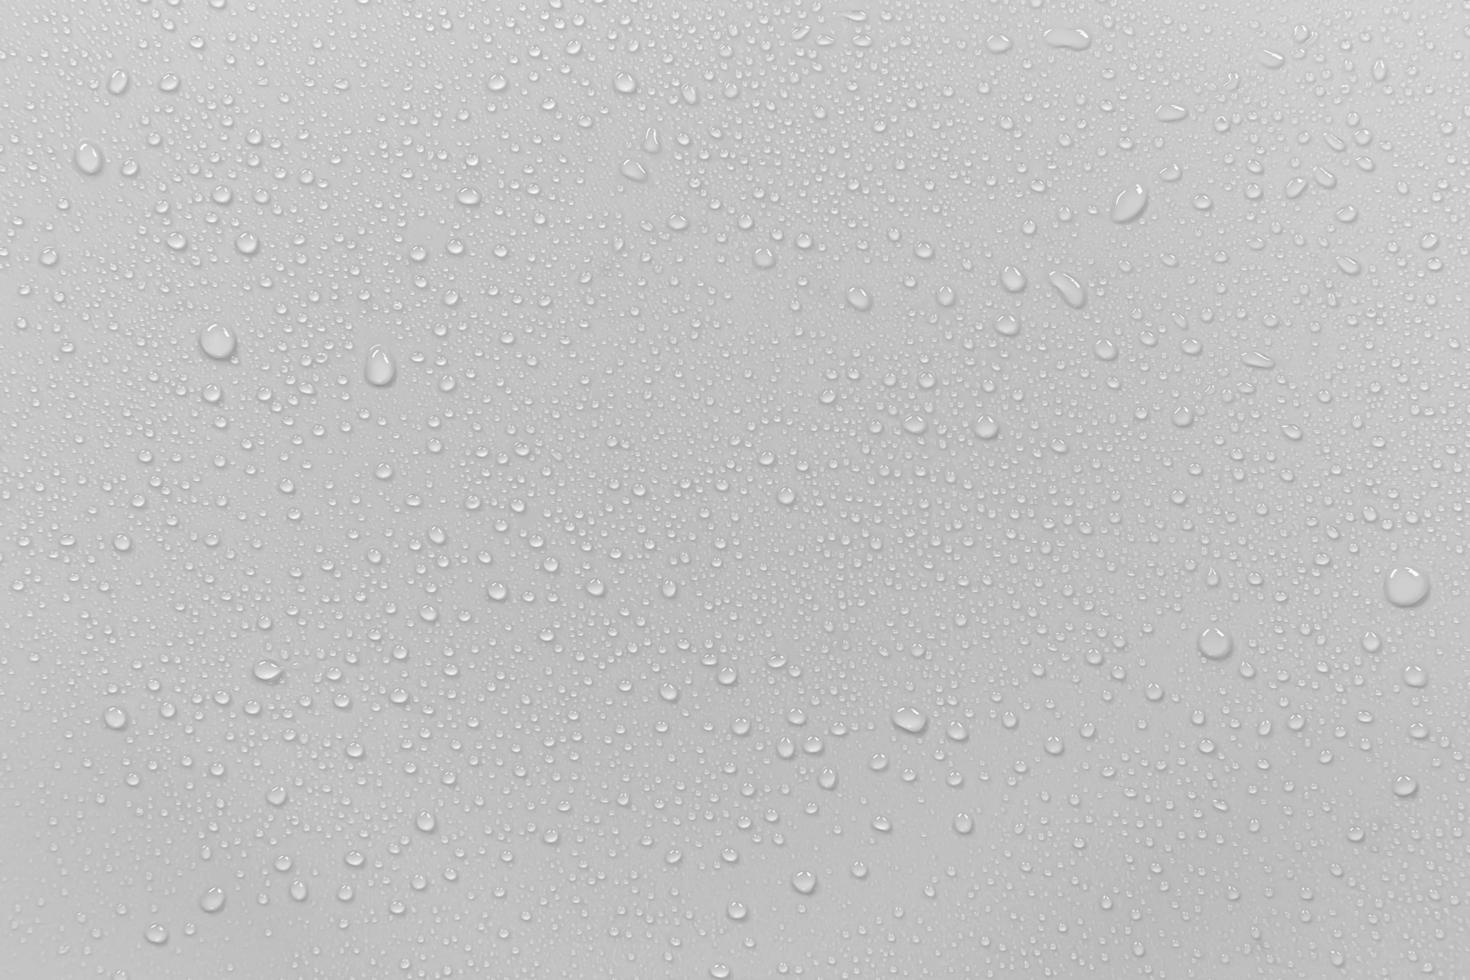 il concetto di gocce di pioggia che cadono su uno sfondo grigio superficie bianca bagnata astratta con bolle sulla superficie goccia d'acqua pura realistica gocce d'acqua per il design creativo di banner foto